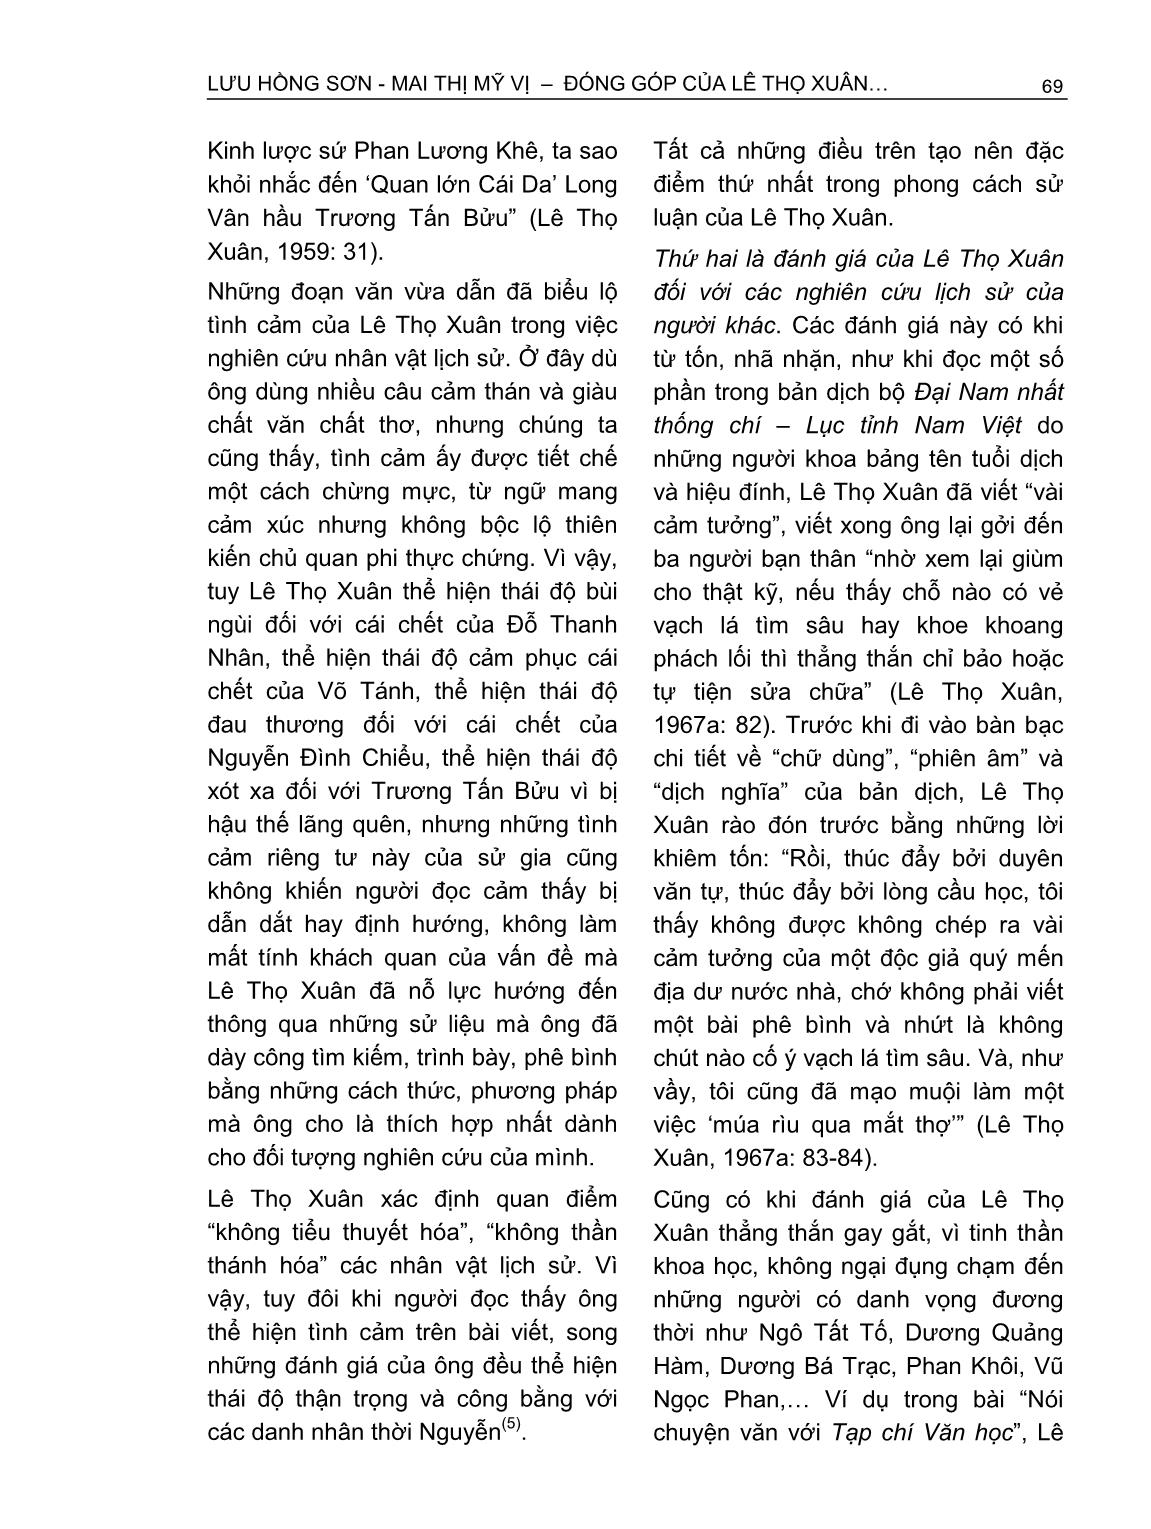 Đóng góp của Lê Thọ Xuân trong nghiên cứu lịch sử Nam Bộ triều Nguyễn thế kỷ XIX trang 10